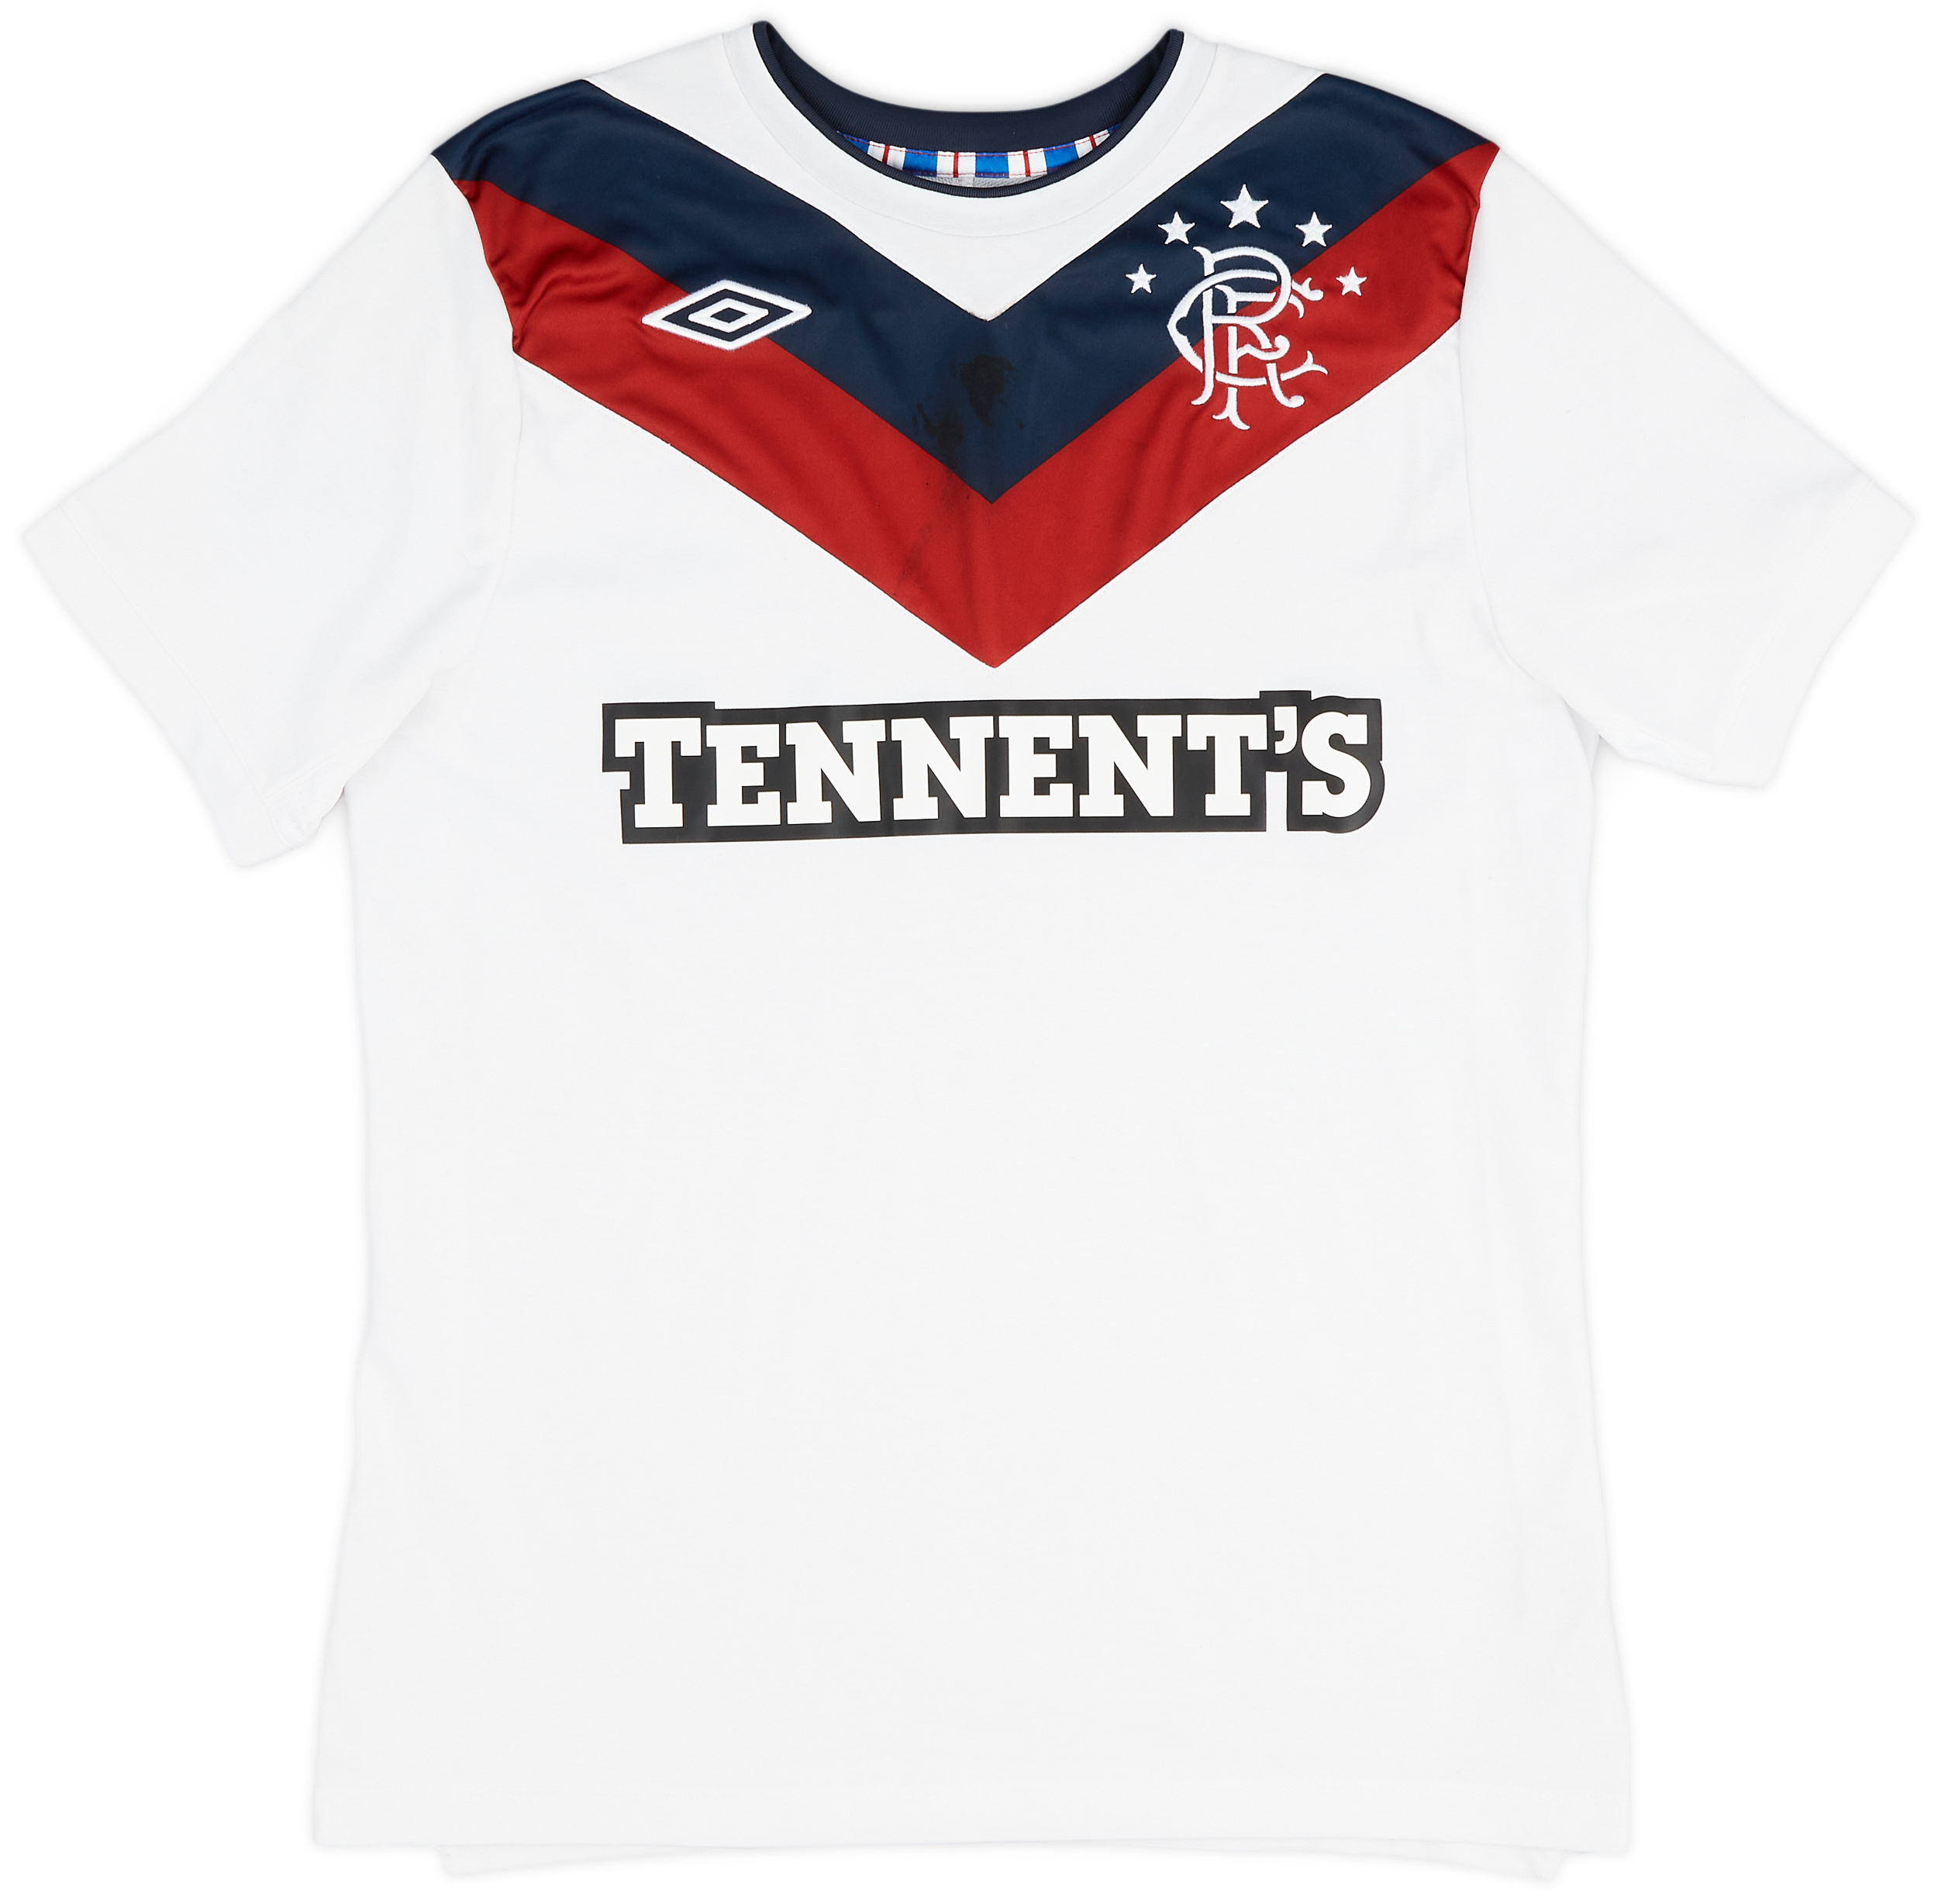 2011-12 Rangers Third Shirt - 5/10 - ()